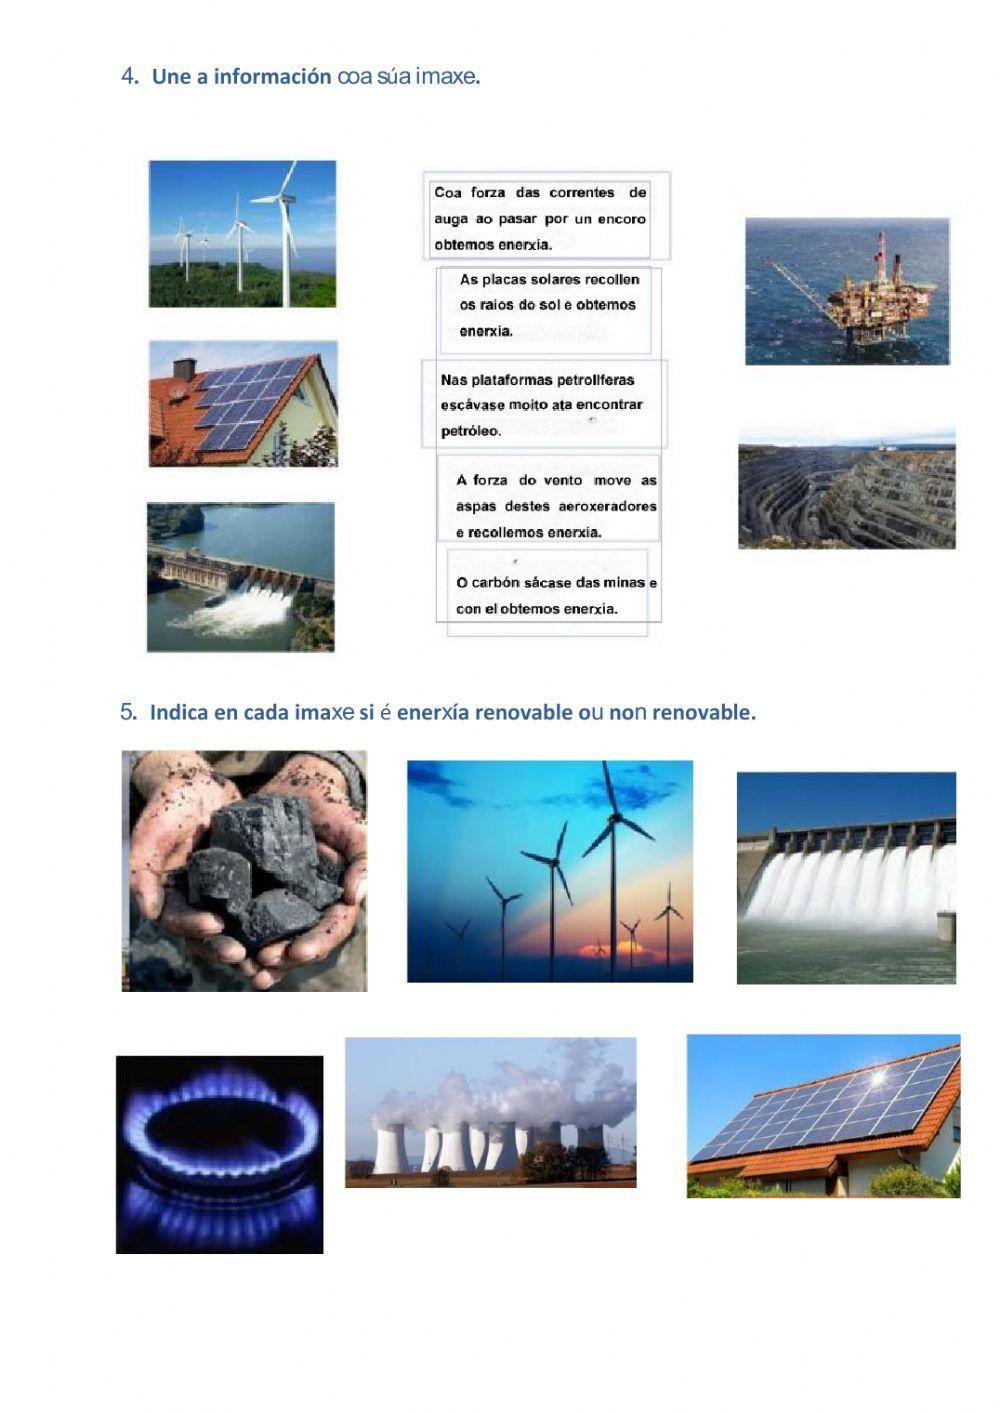 Enerxías renovables e non renovables